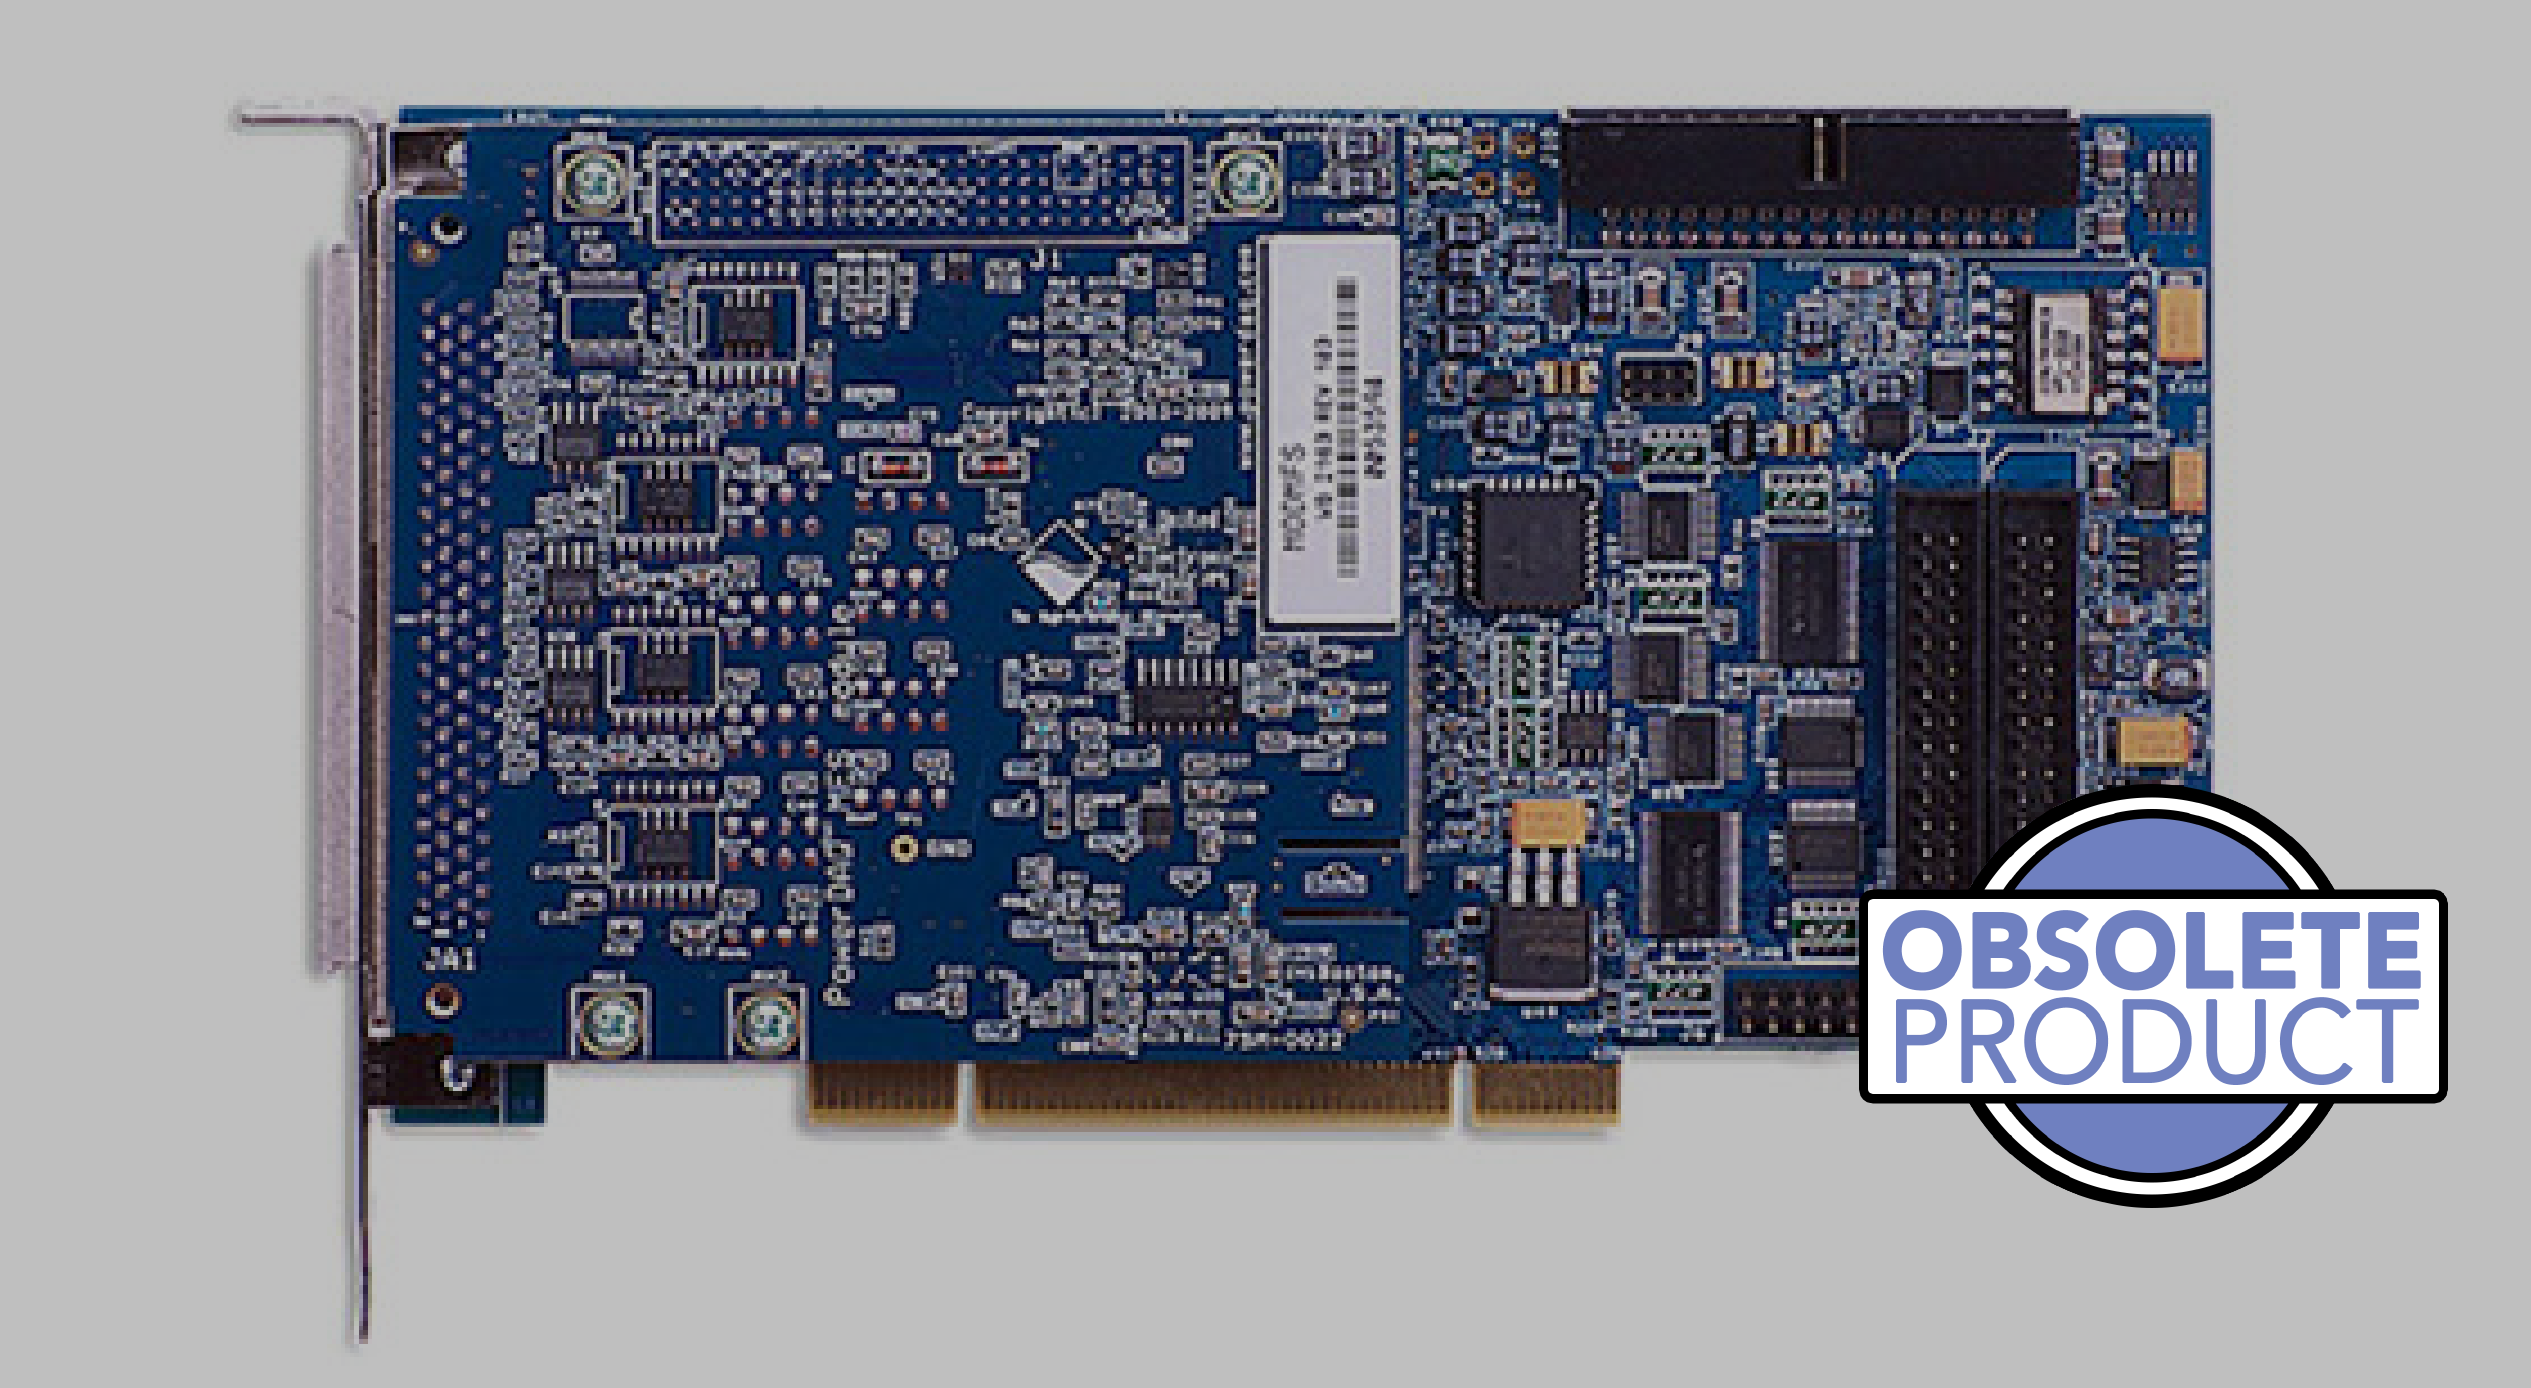 1 MS/s, 12-bit, 4SE SSH A/D PCI multifunction board